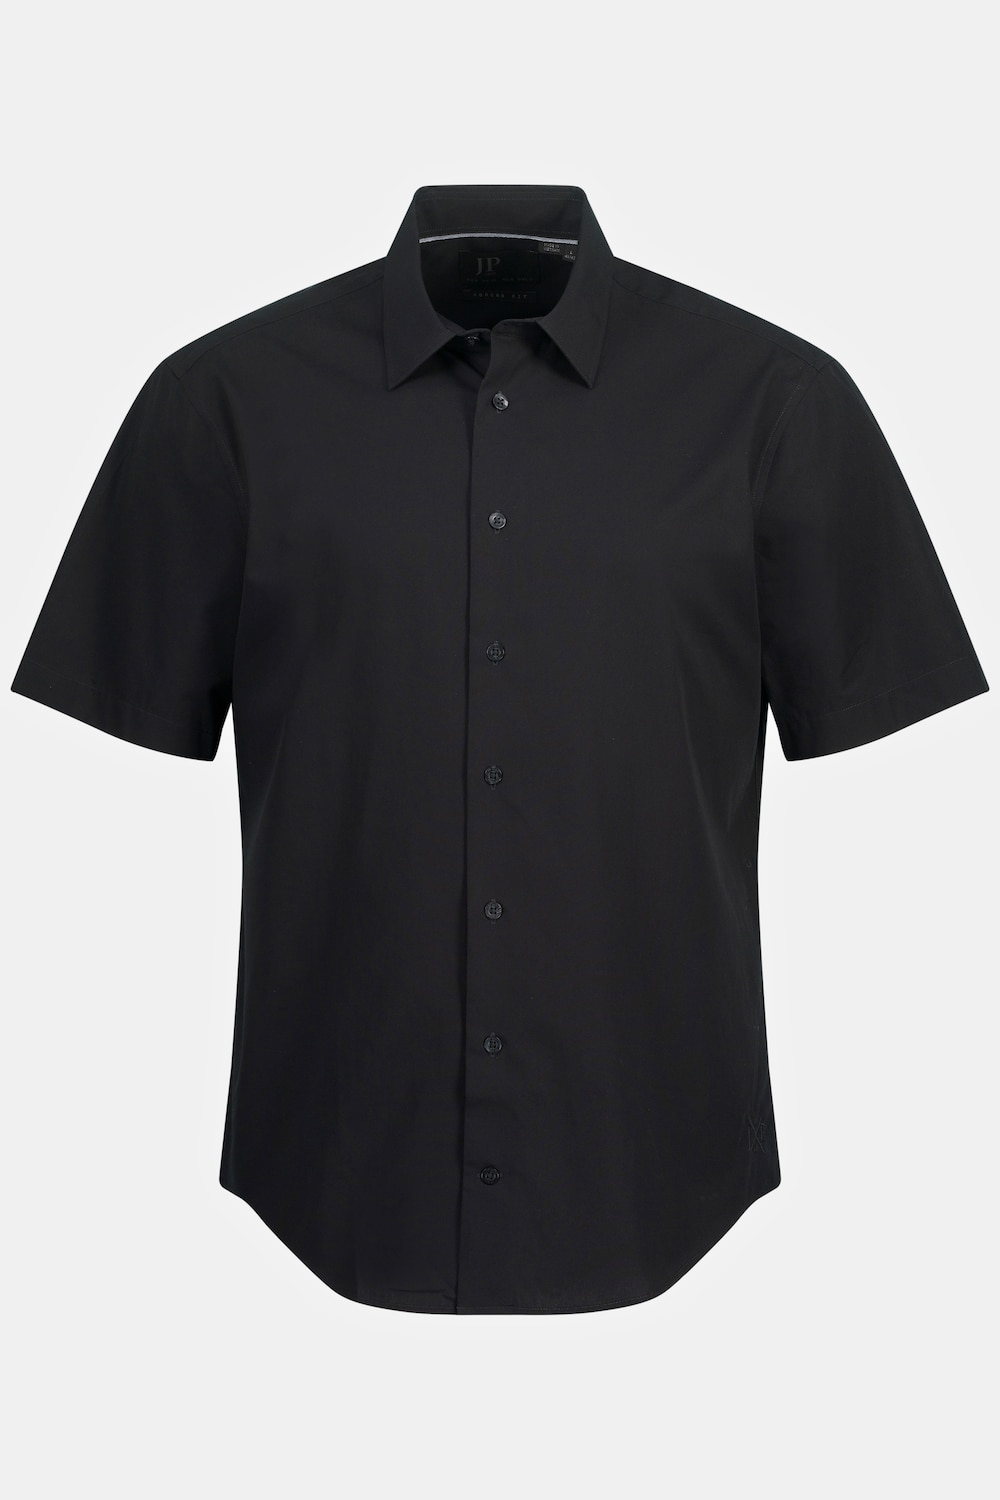 Grote Maten Zakelijk overhemd, Heren, zwart, Maat: XL, Katoen, JP1880